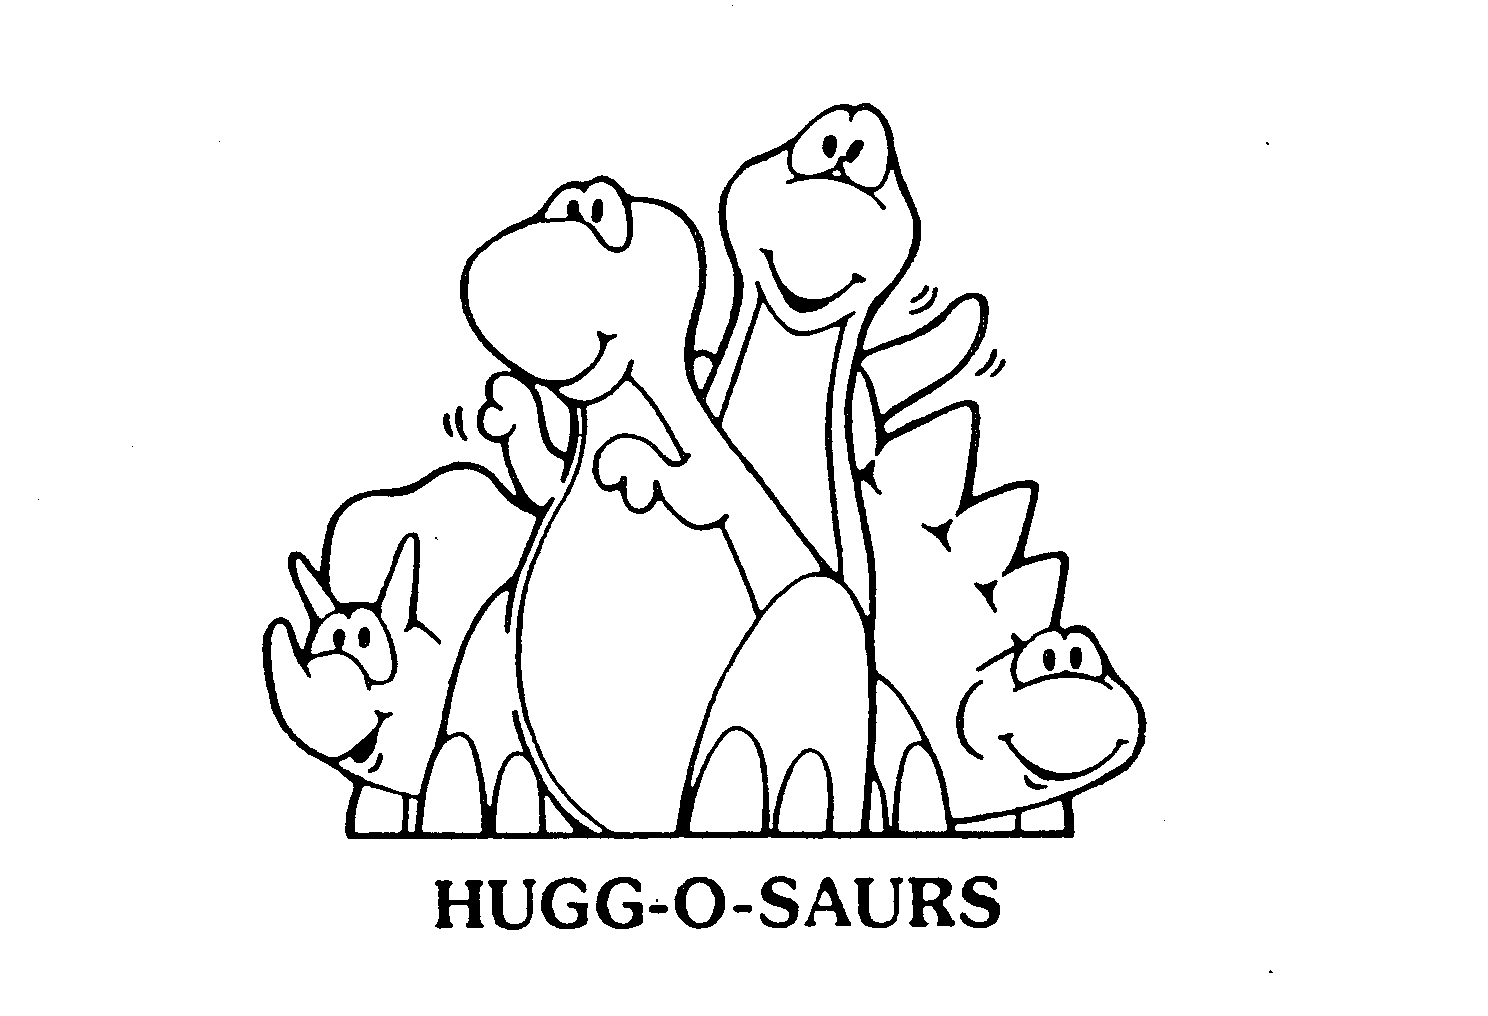  HUGG-O-SAURS